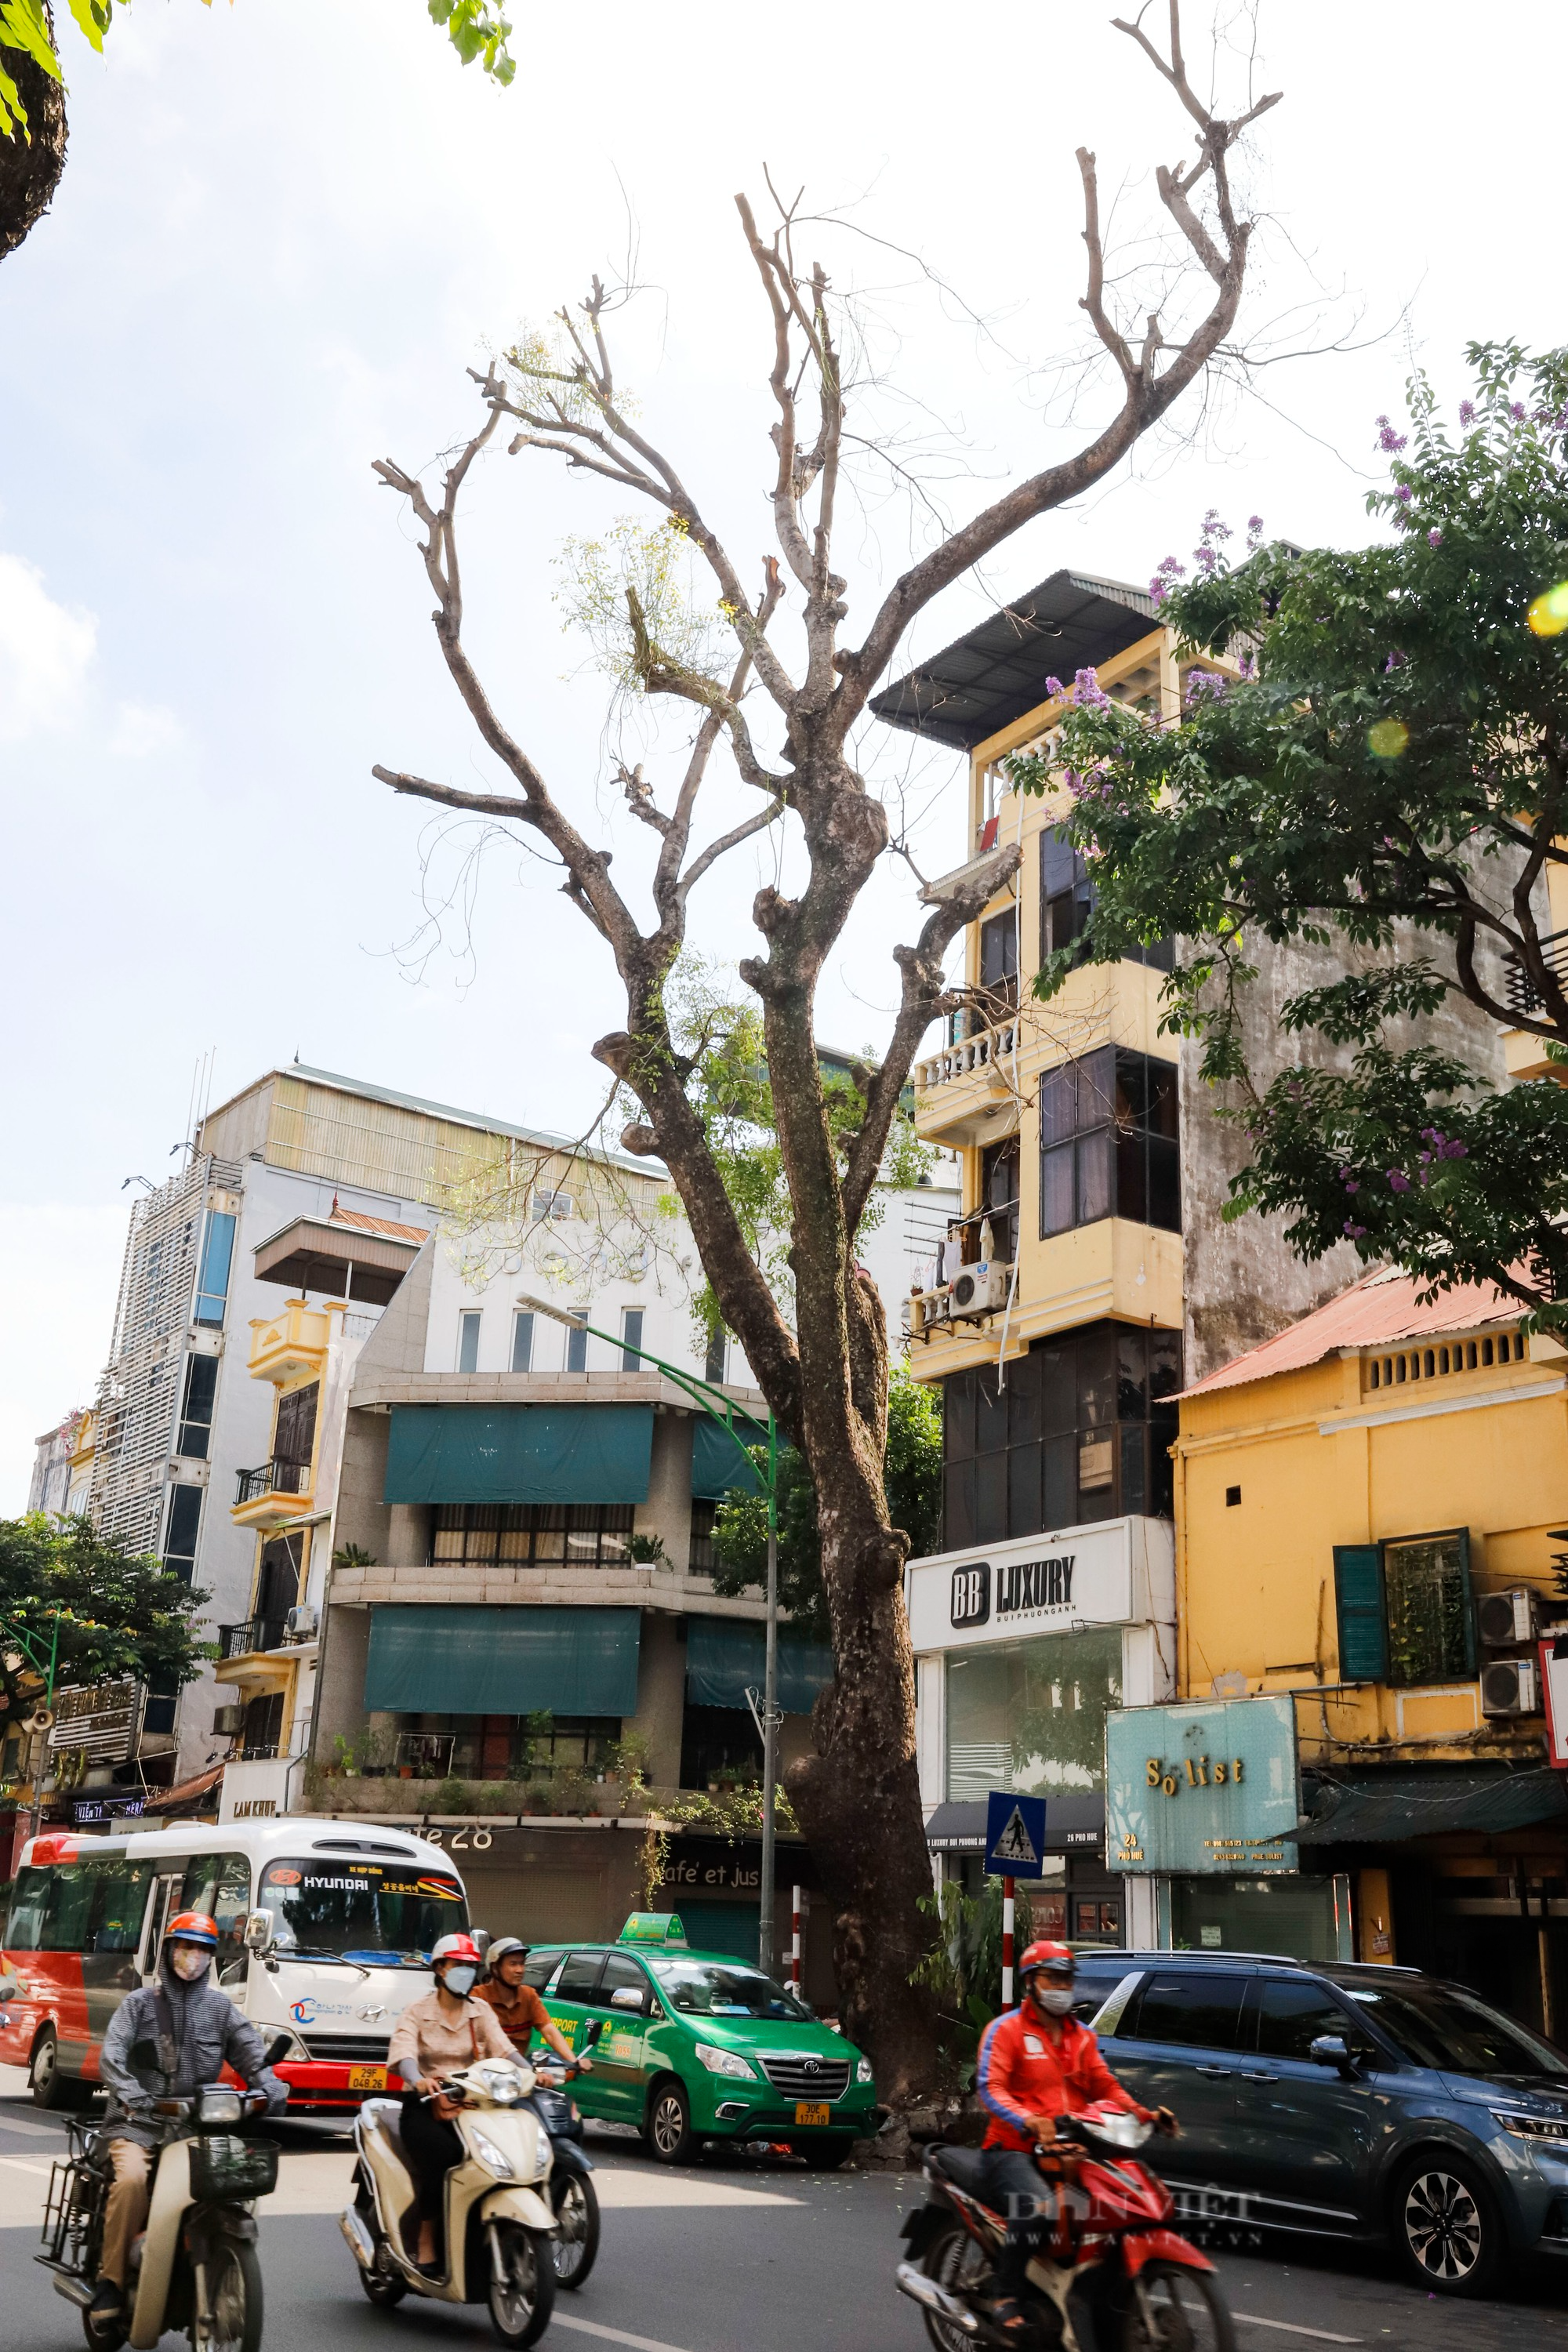 Nhiều cây cổ thụ chết khô trên các tuyến phố Hà Nội, nguy cơ đổ khi giông bão - Ảnh 3.